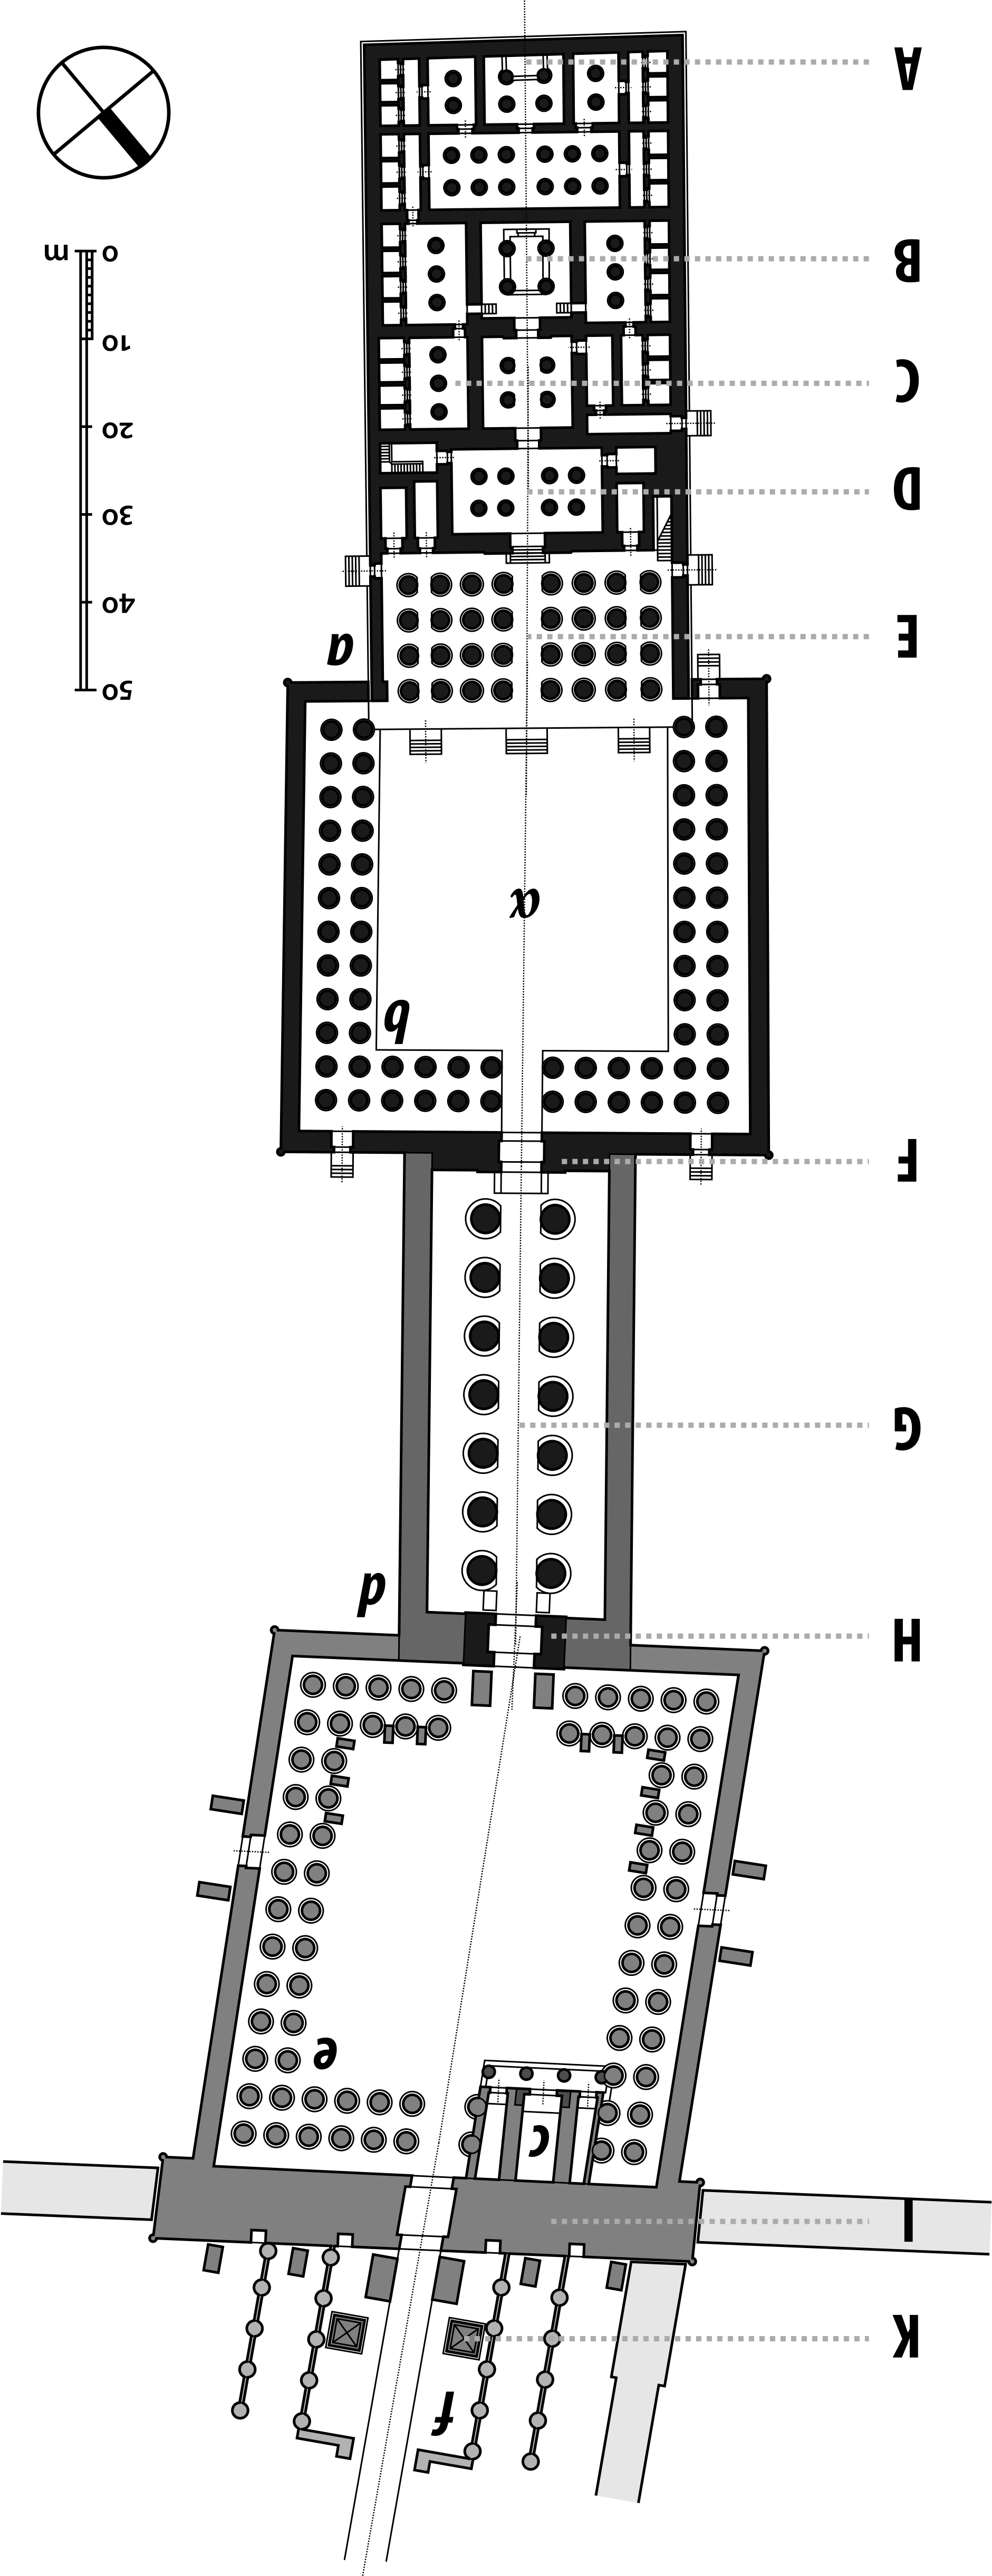 A Diagram Of A Machine